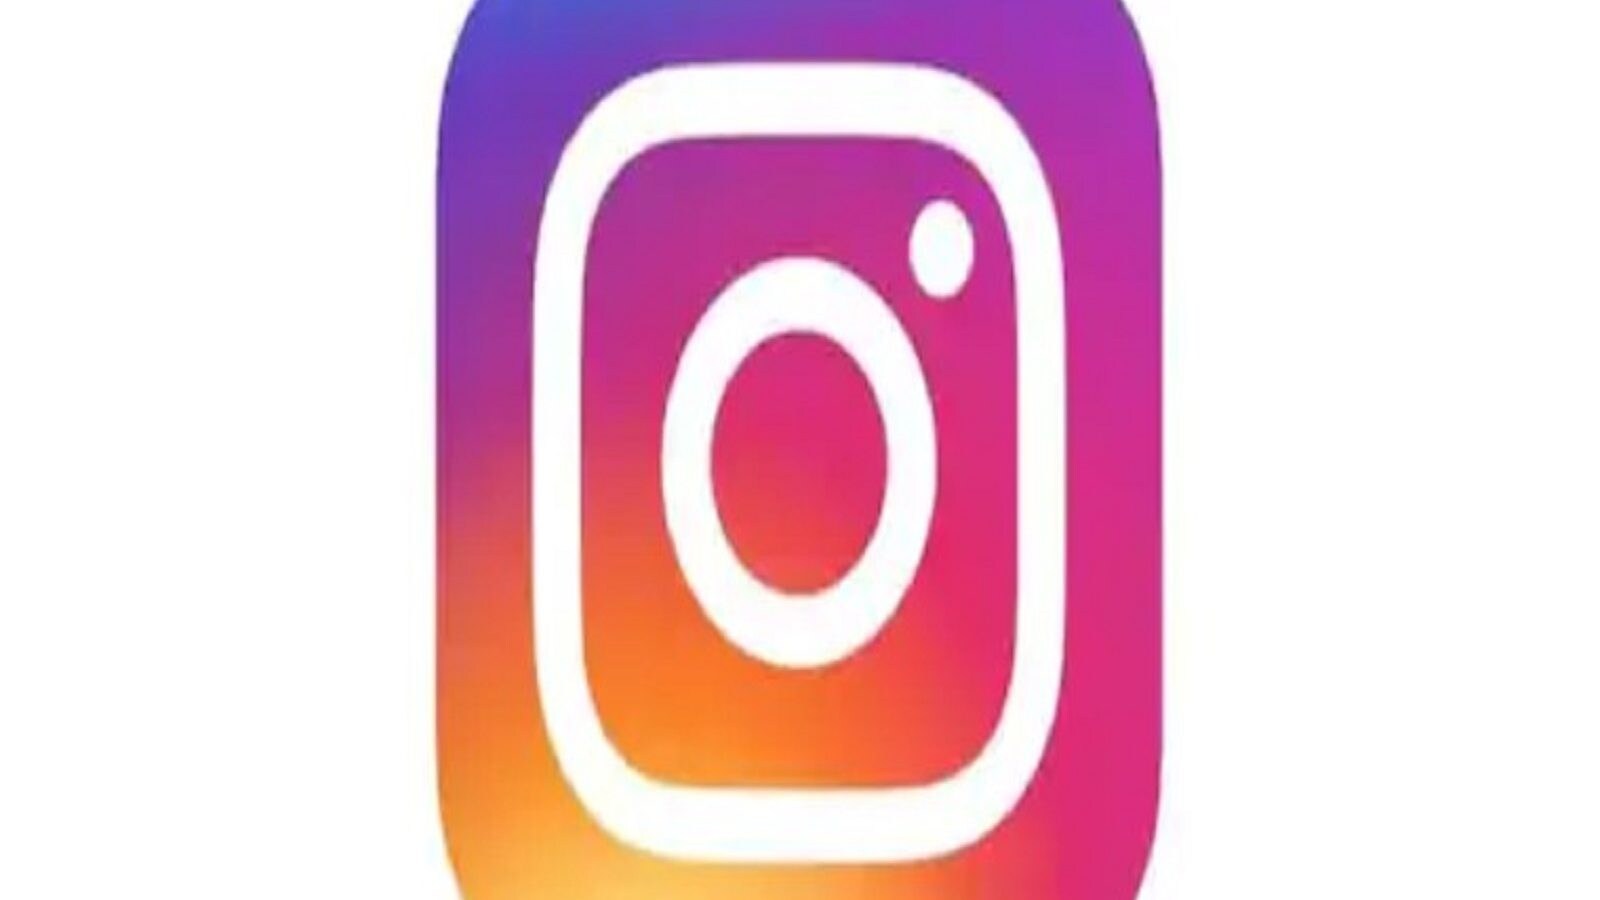 প্রাপ্তবয়স্ক হচ্ছে Instagram! বয়সের নিষেধাজ্ঞা নিয়ে আসছে নতুন ফিচার